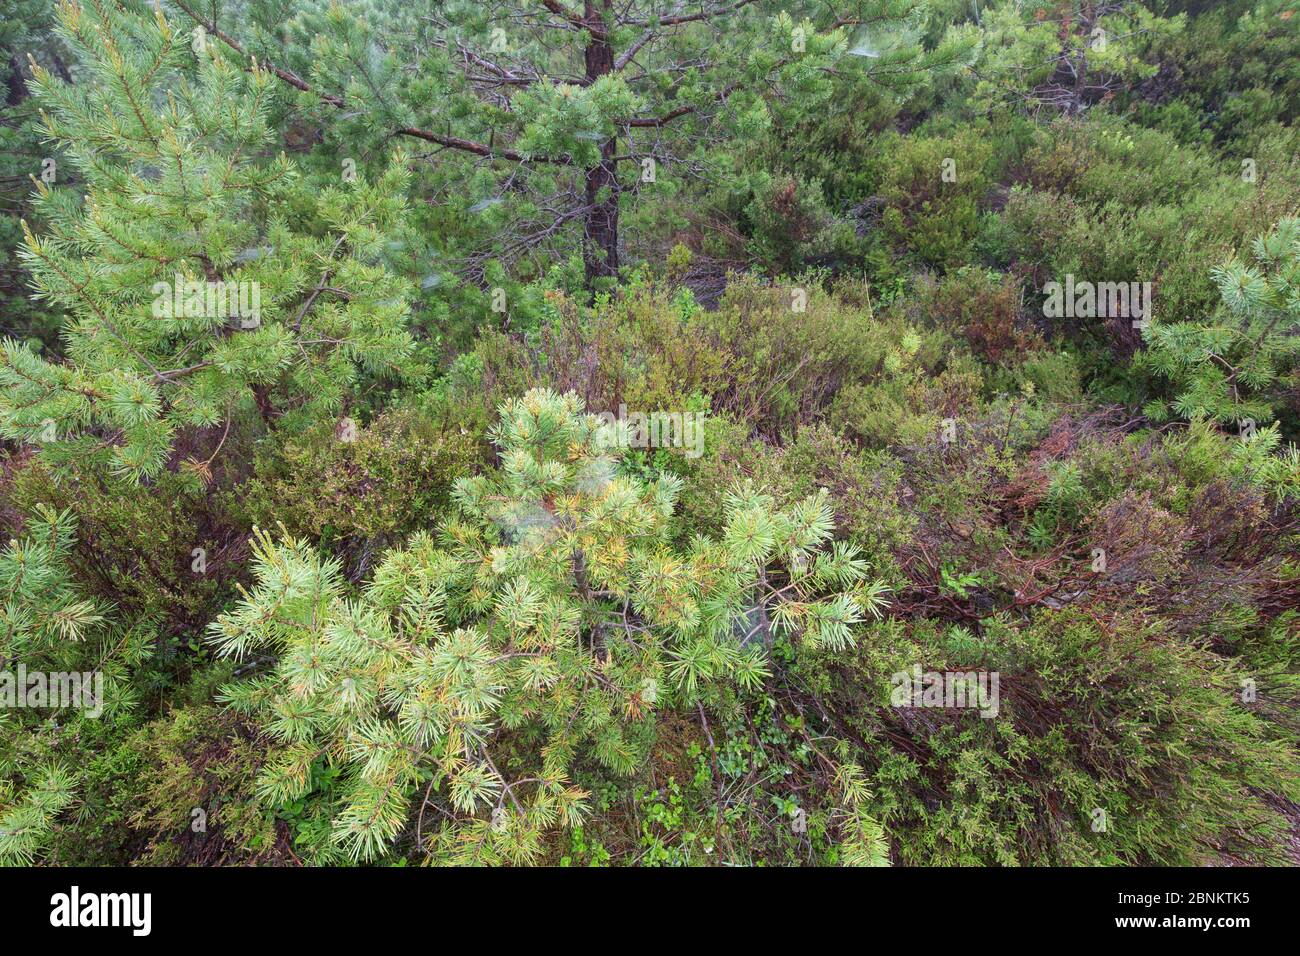 Sezione di fondo forestale con il giovane pino scozzese (Pinus sylvestris) e vegetazione rigenerante, Rothiemurchus Forest, Cairngorms National Park, Scozia Foto Stock